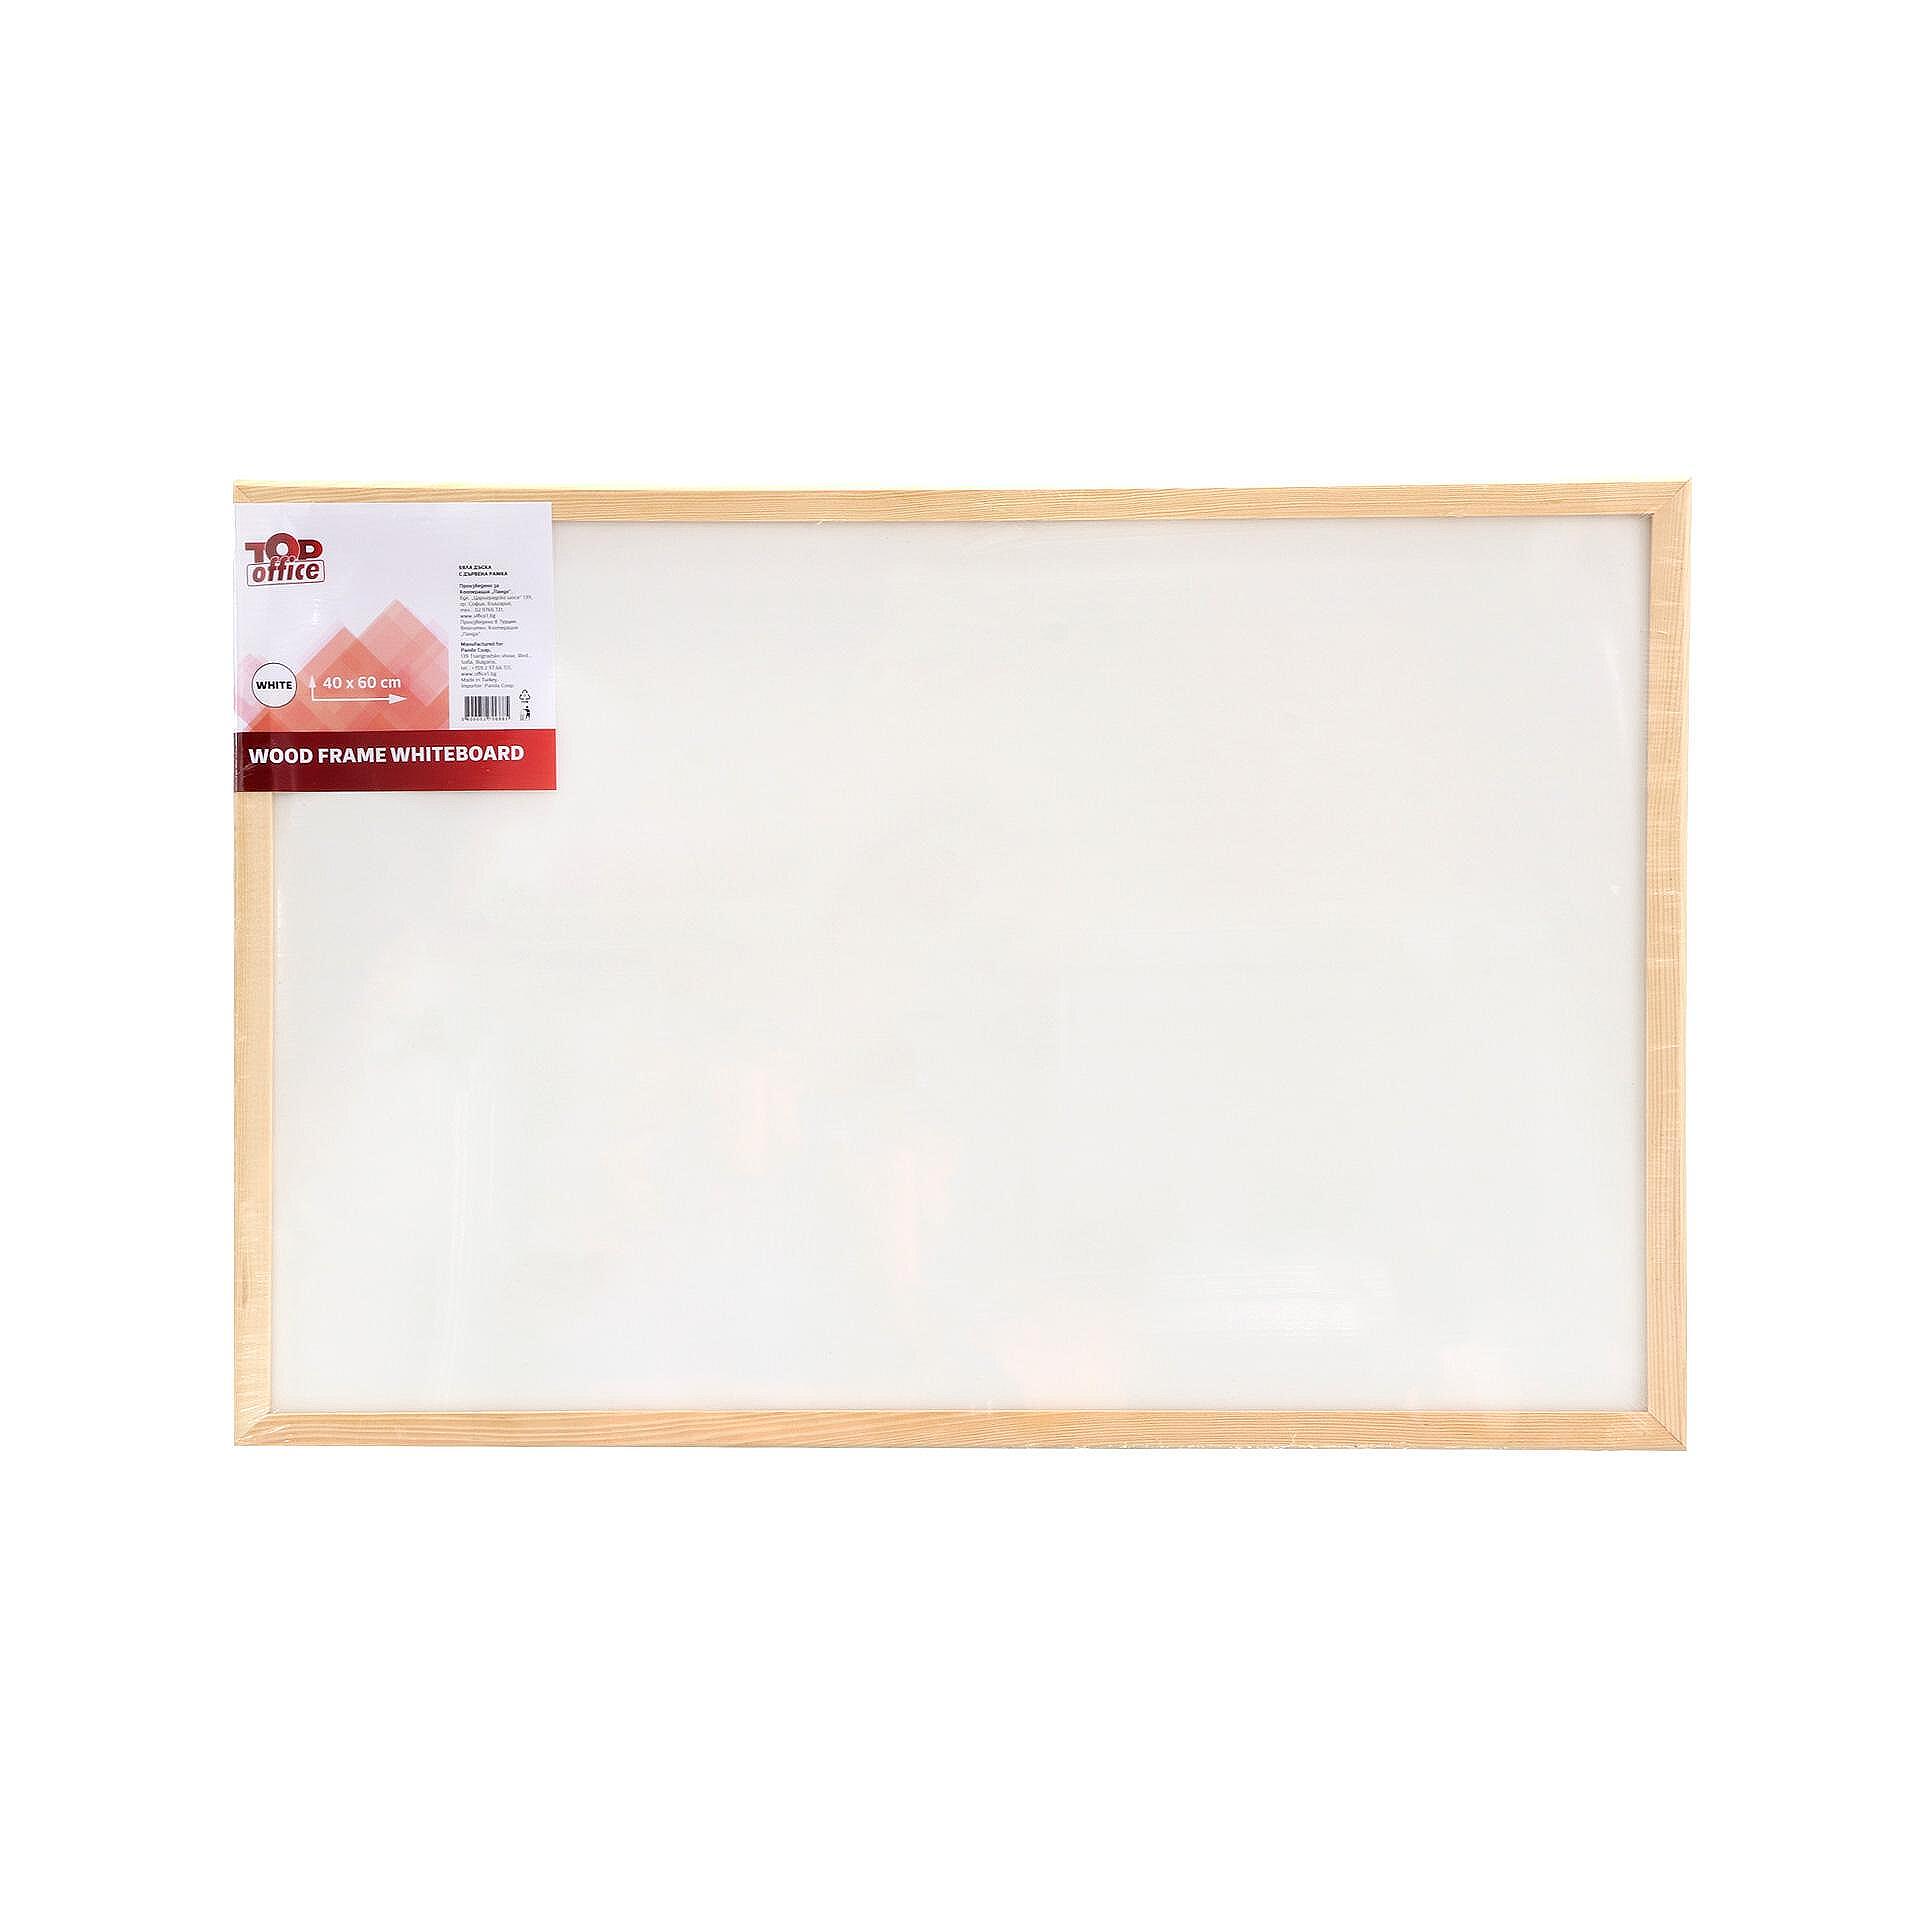 Top Office Бяла дъска, с дървена рамка, 40 x 60 cm Изображение